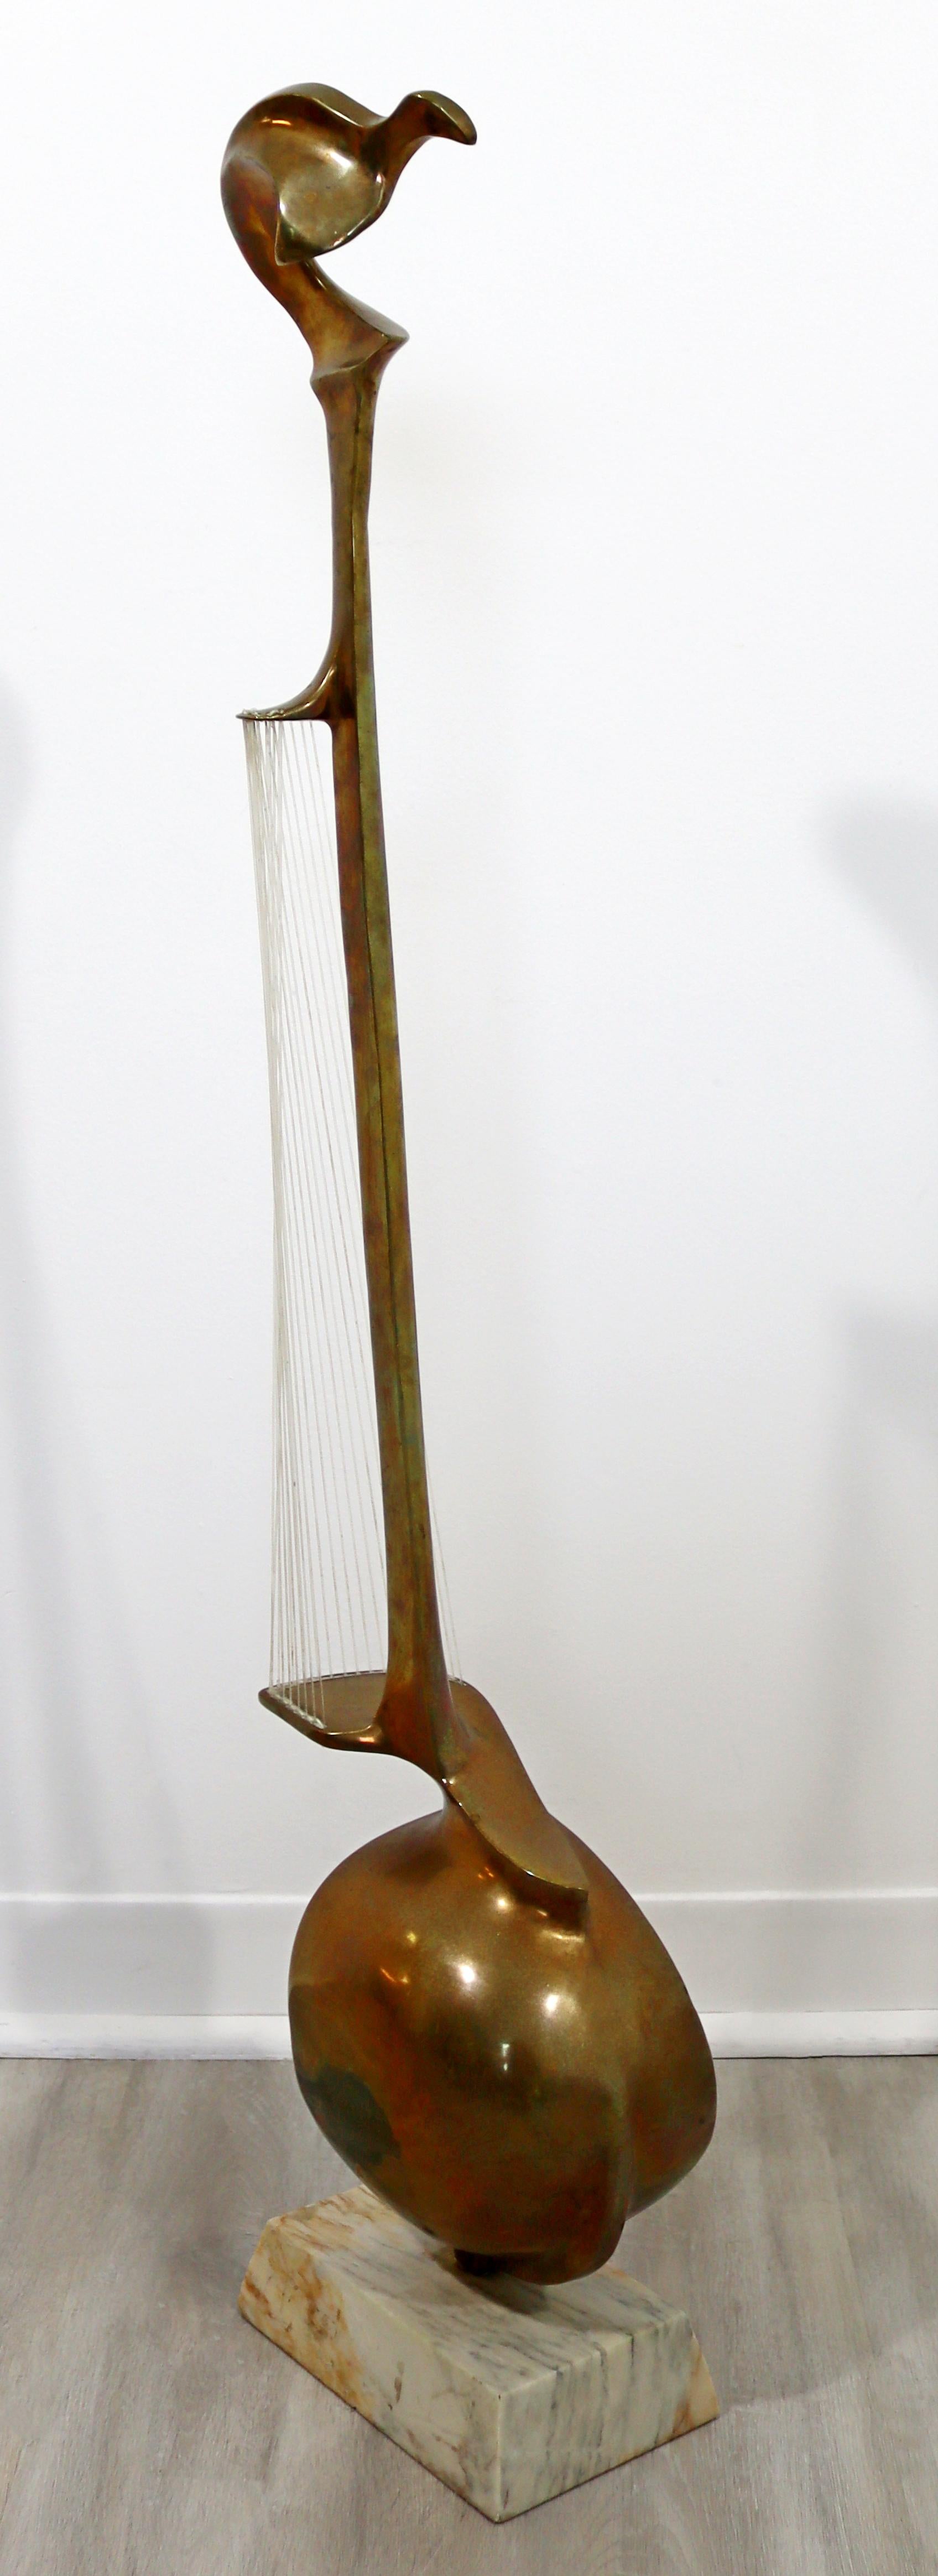 Hattakitkosol Somchai Modernist Bronze Marble String Instrument Floor Sculpture For Sale 1